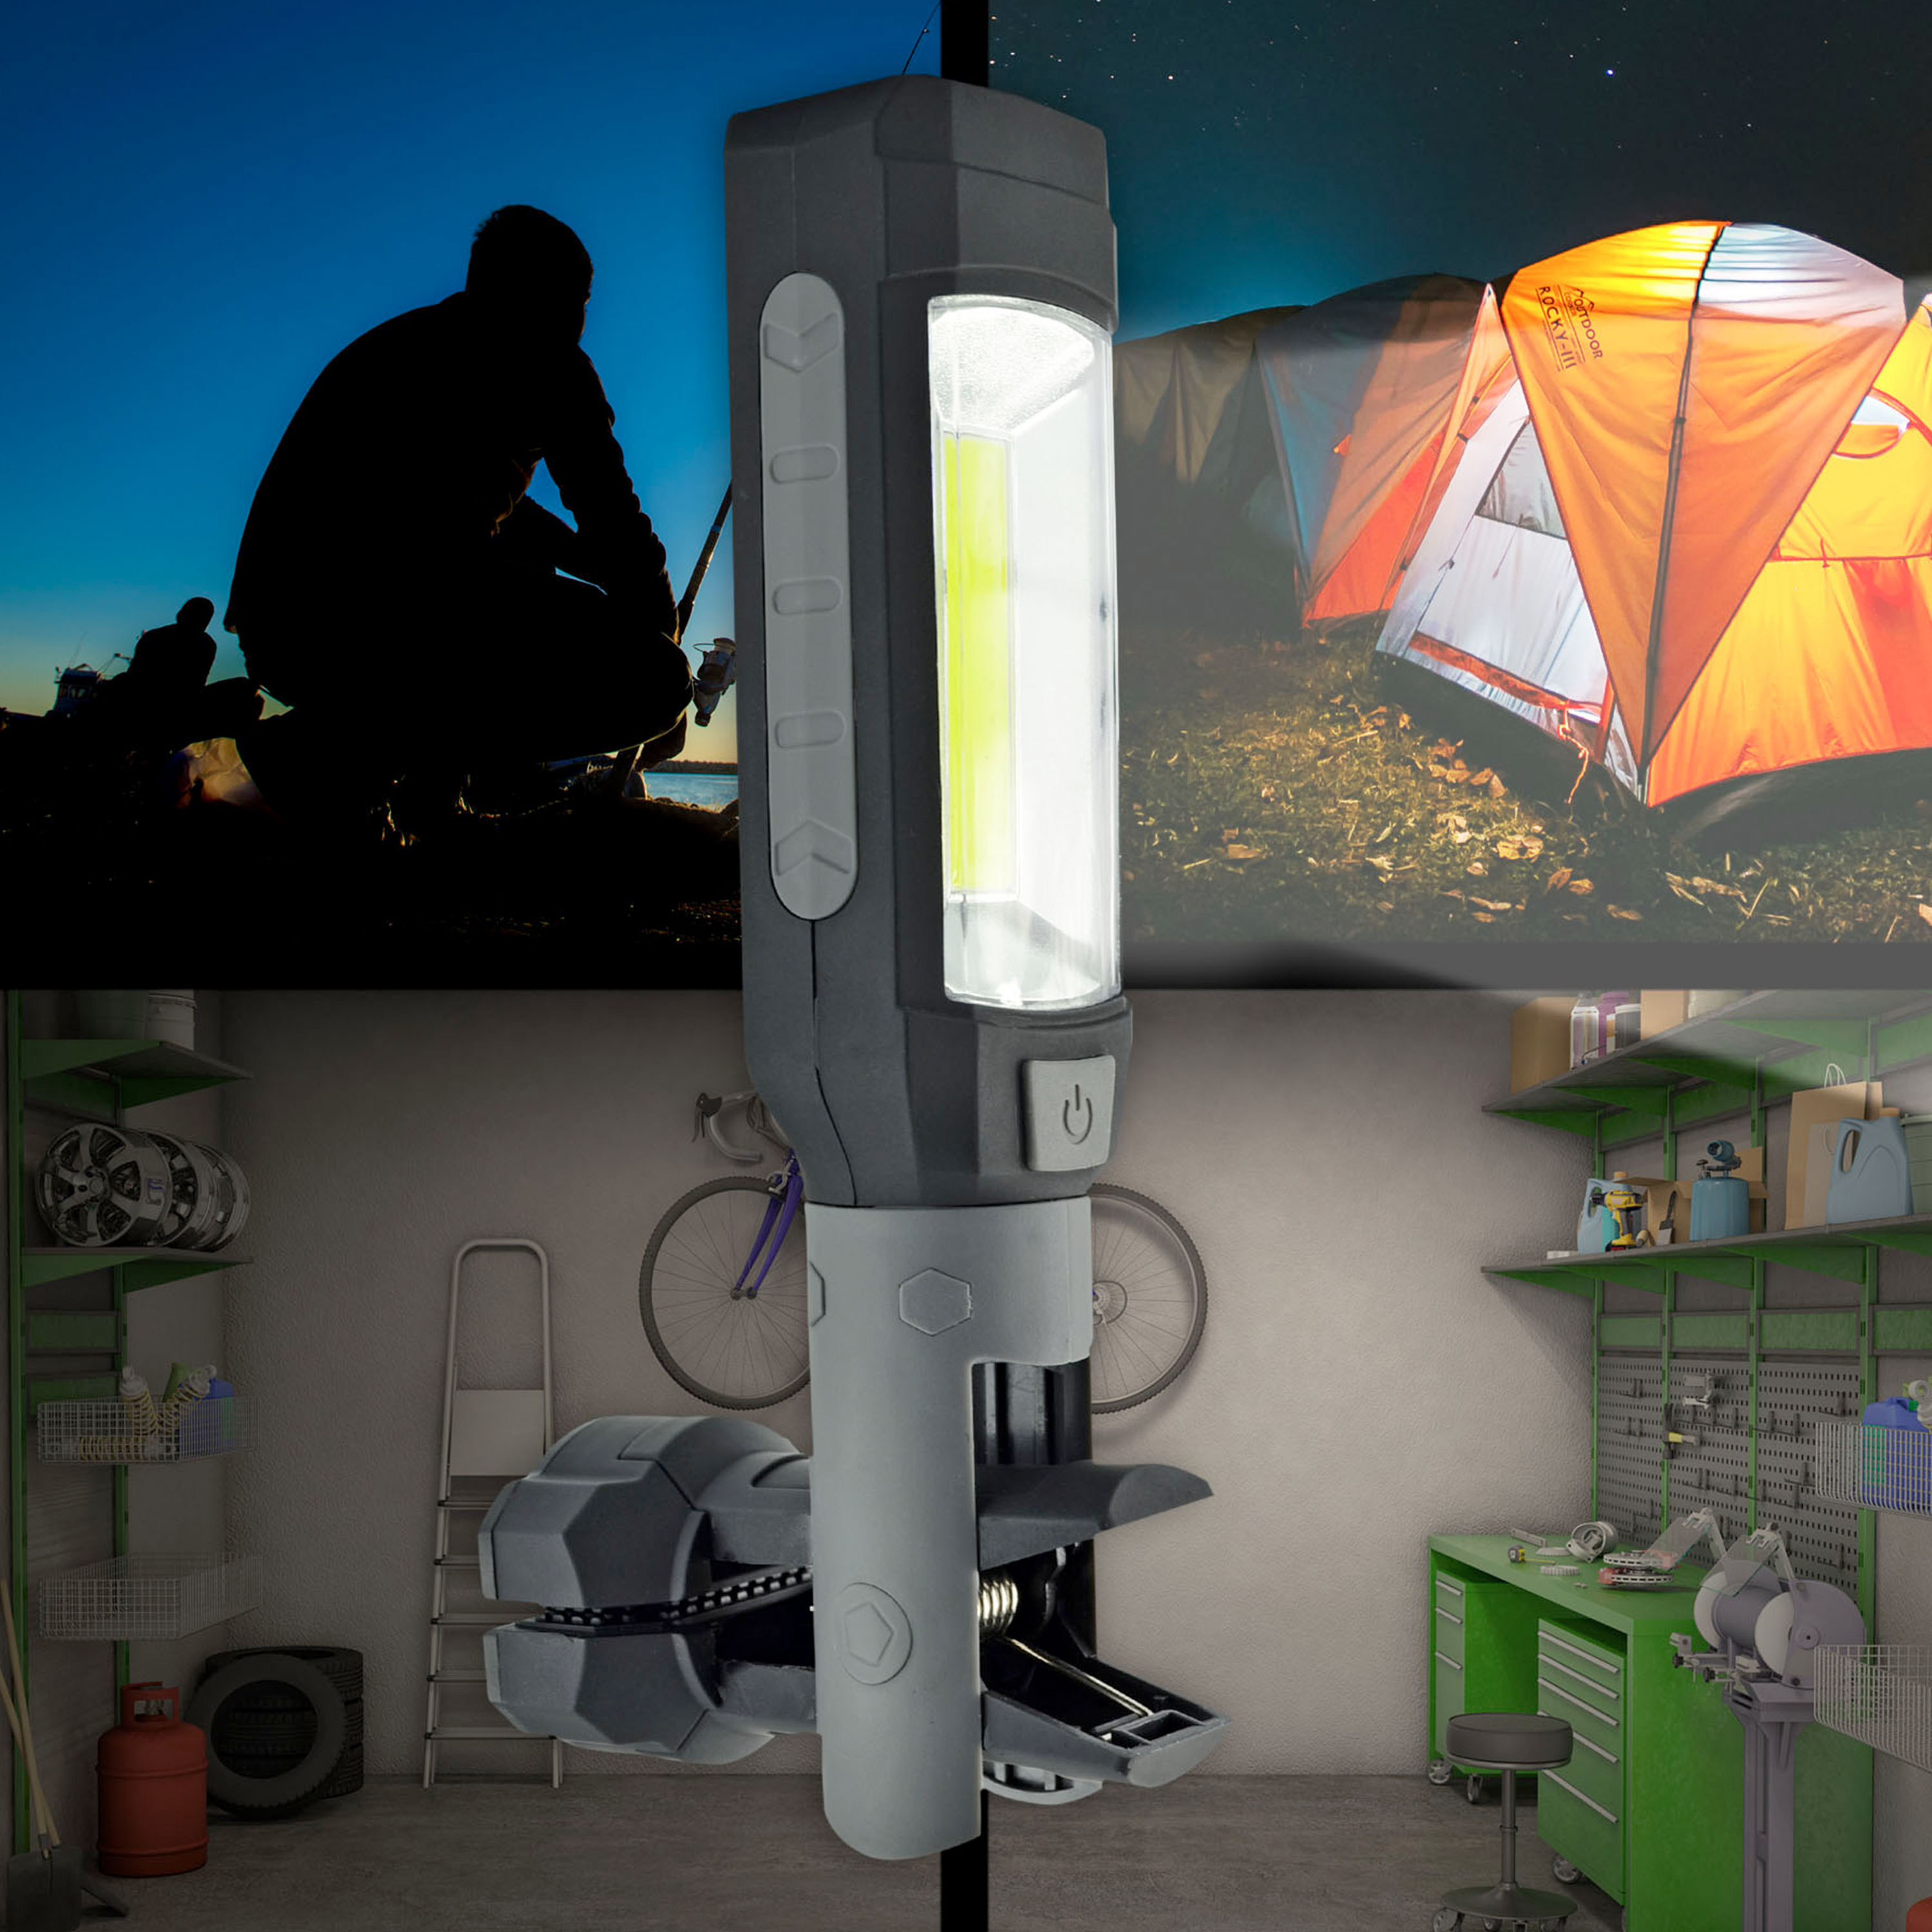 X4-LIFE LED Werkstattleuchte - COB Taschenlampe 1W Stablampe mit Klemme magnetisch